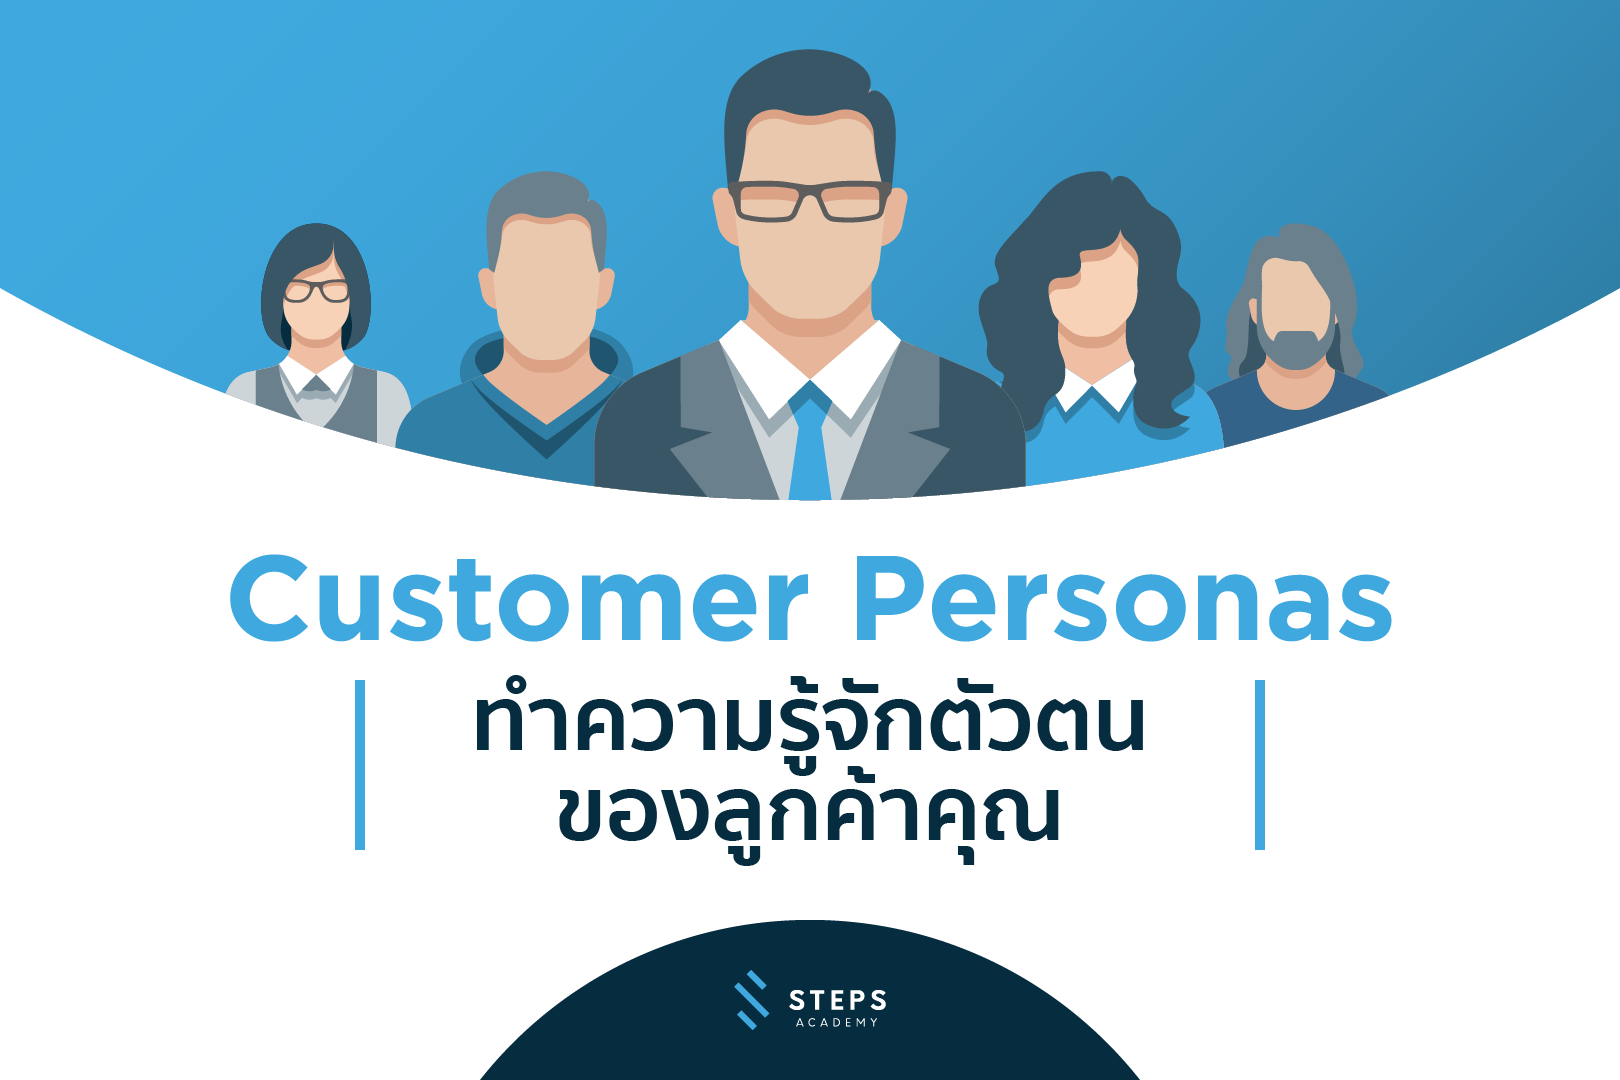 Customer Personas : ทำความรู้จักตัวตนของลูกค้าคุณ - STEPS Academy